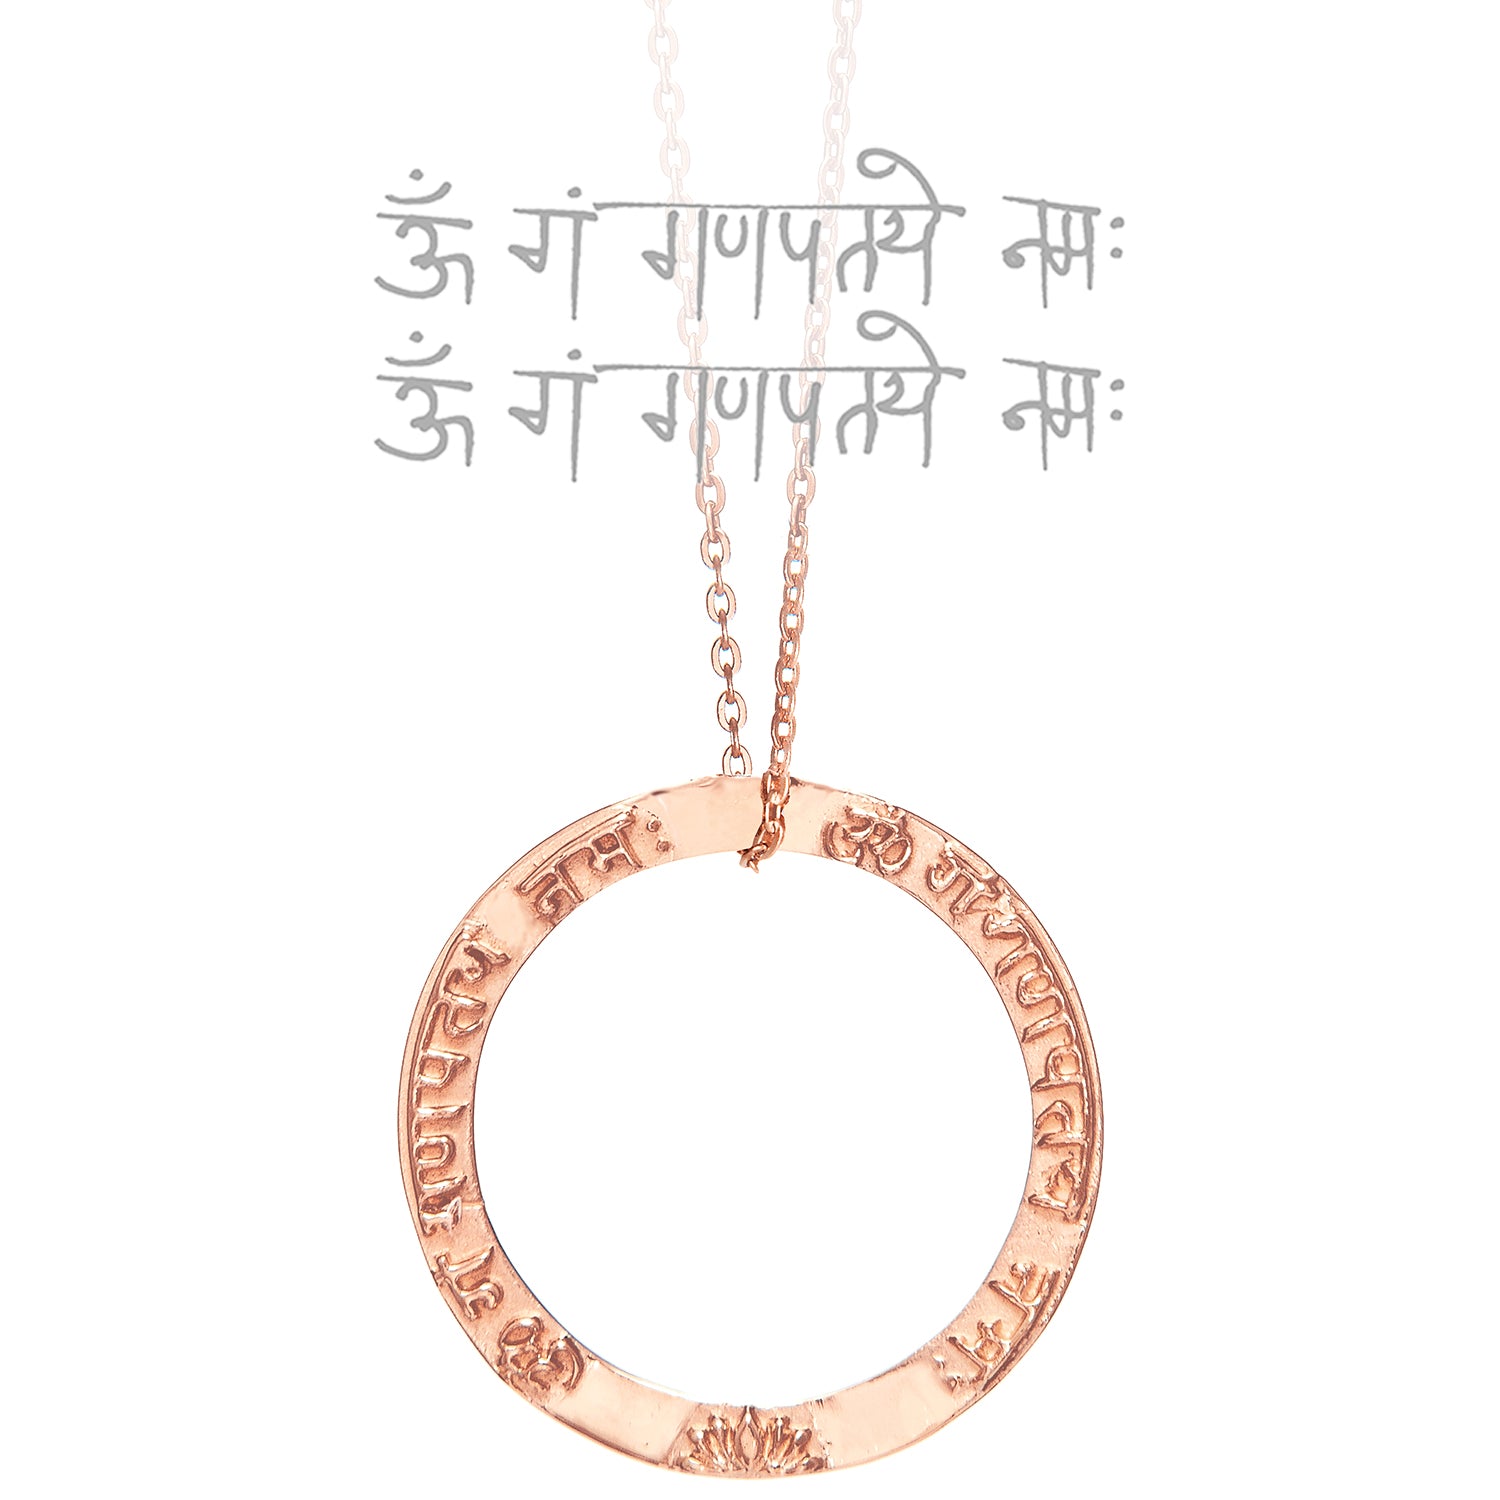 Ringförmiger Ganesha Mantra Anhänger  aus rosé vergoldetem Sterling Silber von ETERNAL BLISS aus der spirituellen Yoga Schmuckkollektion